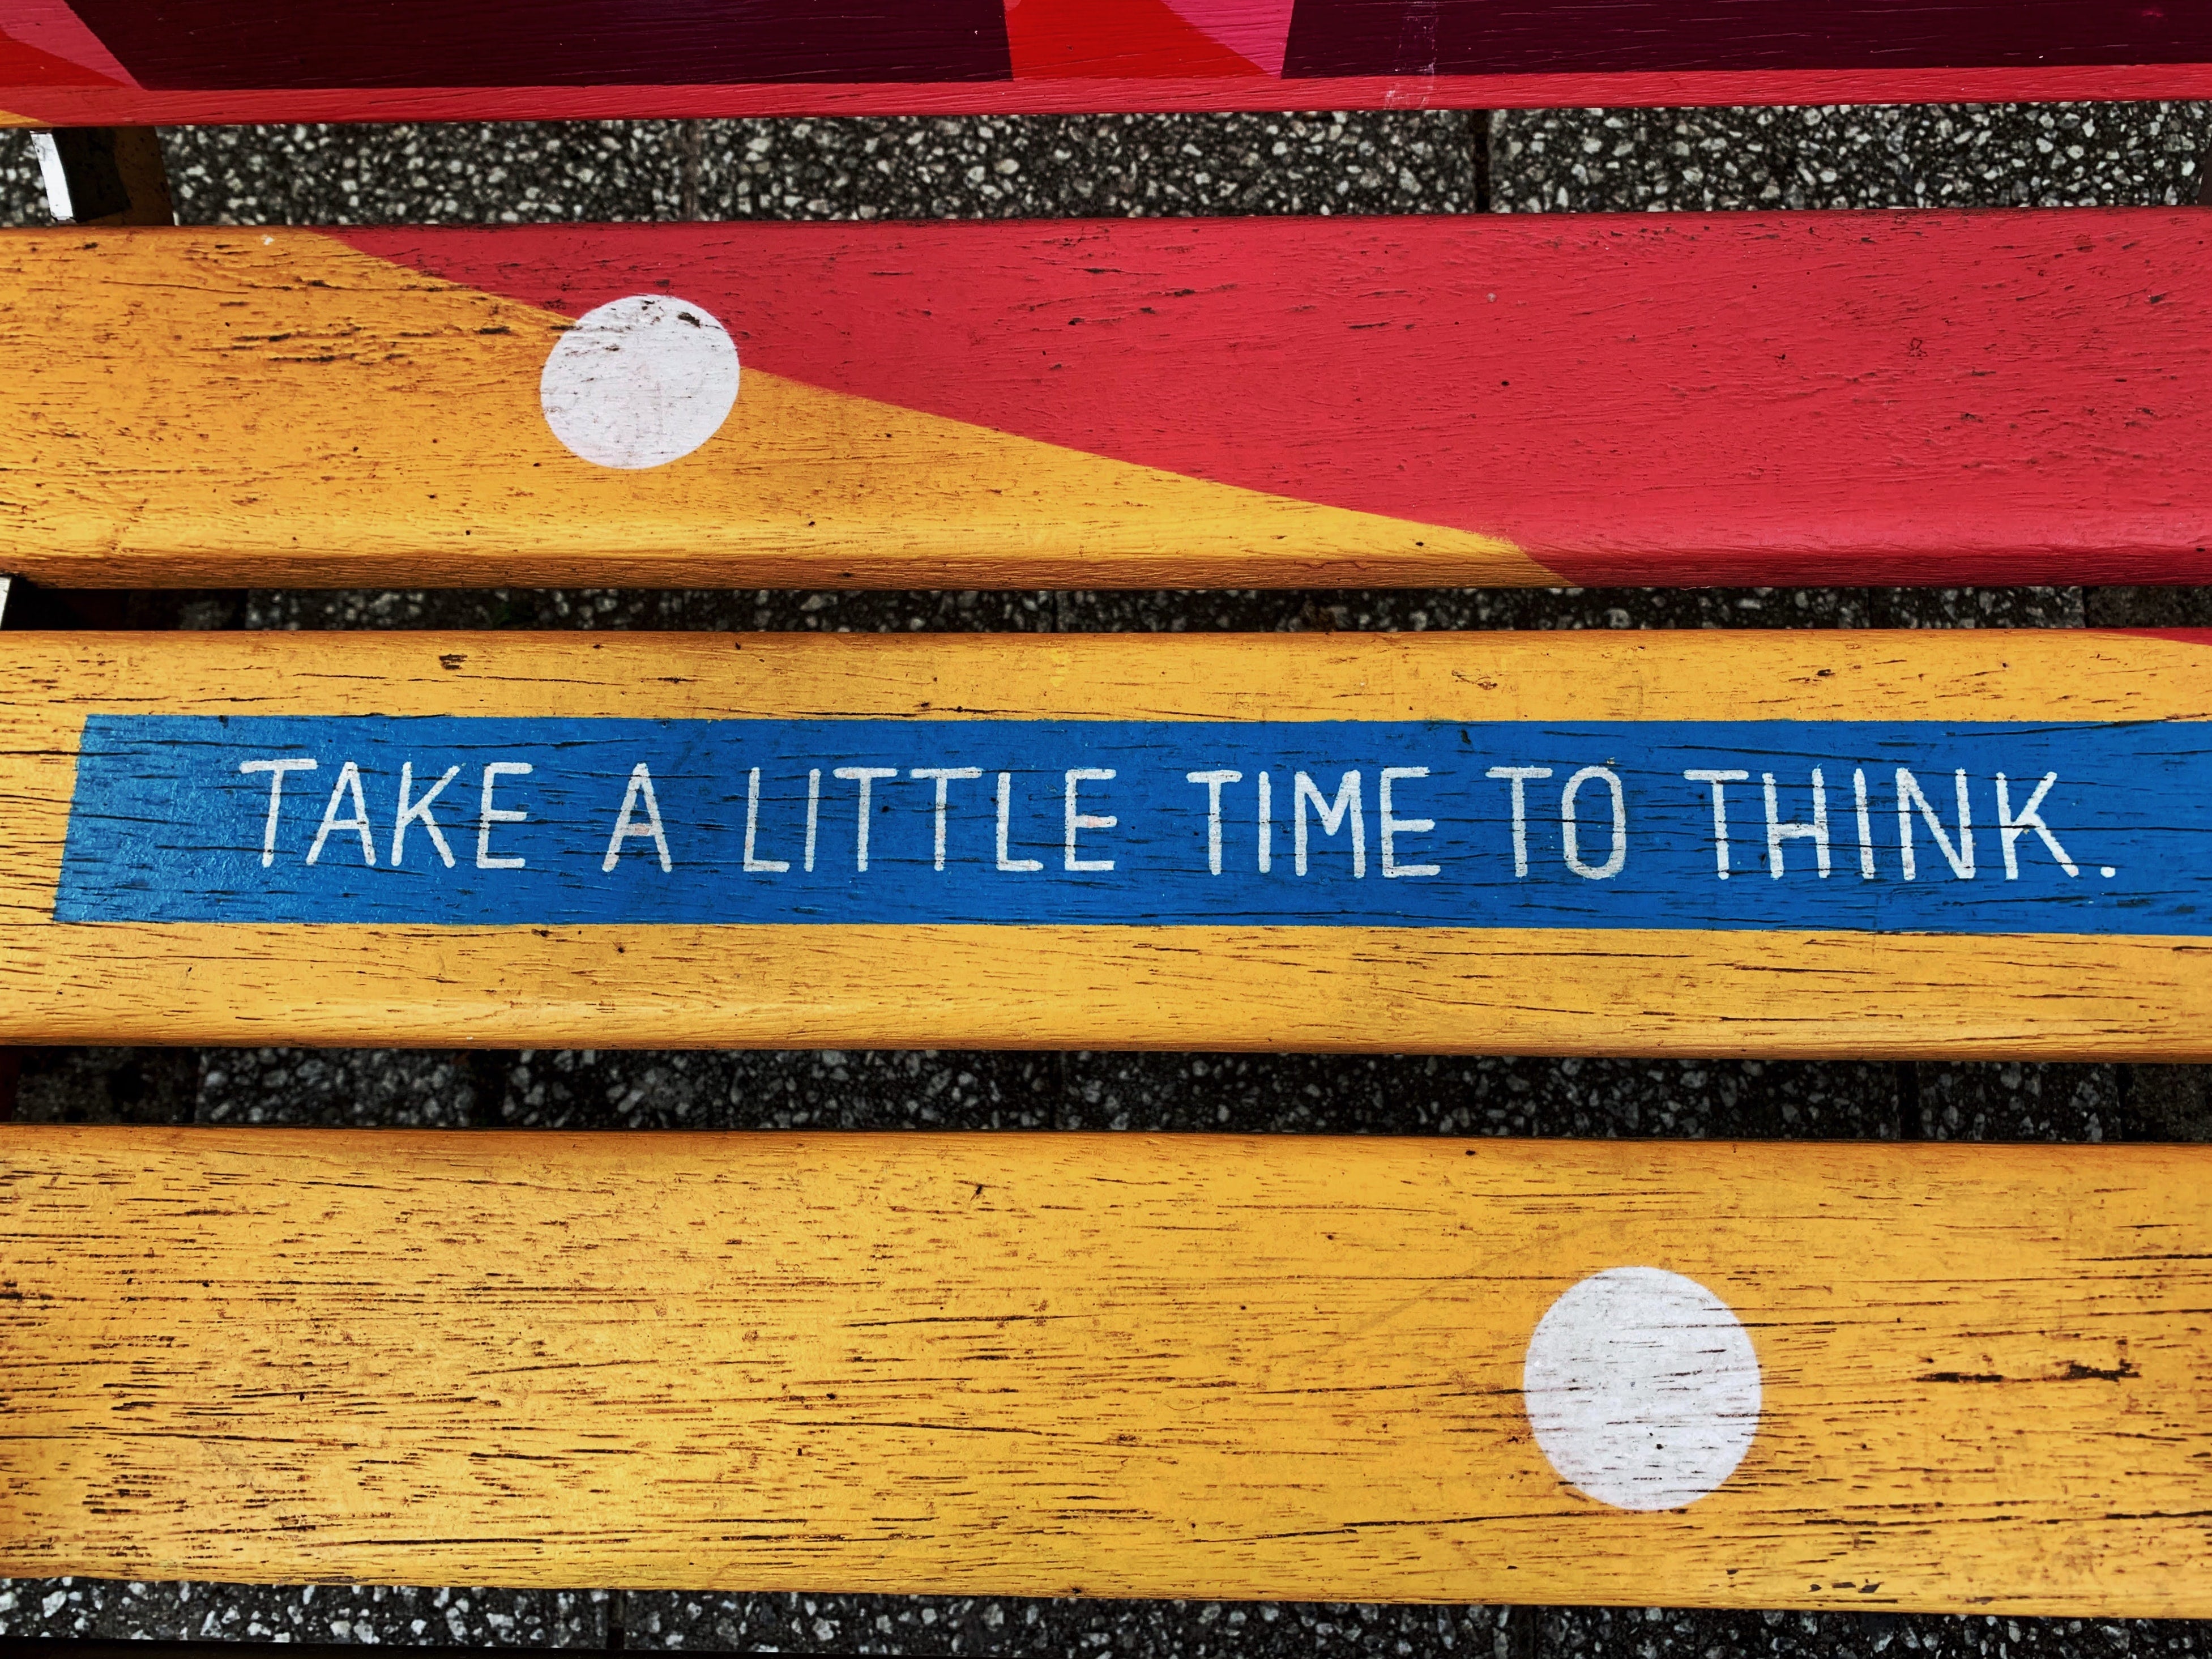 Eine bunt angemalte Parkbank mit der Aufschrift "Take a little time to think". Der erste Schritt, um mit Dropshipping anzufangen ist, sich über die Ziele klar zu werden.